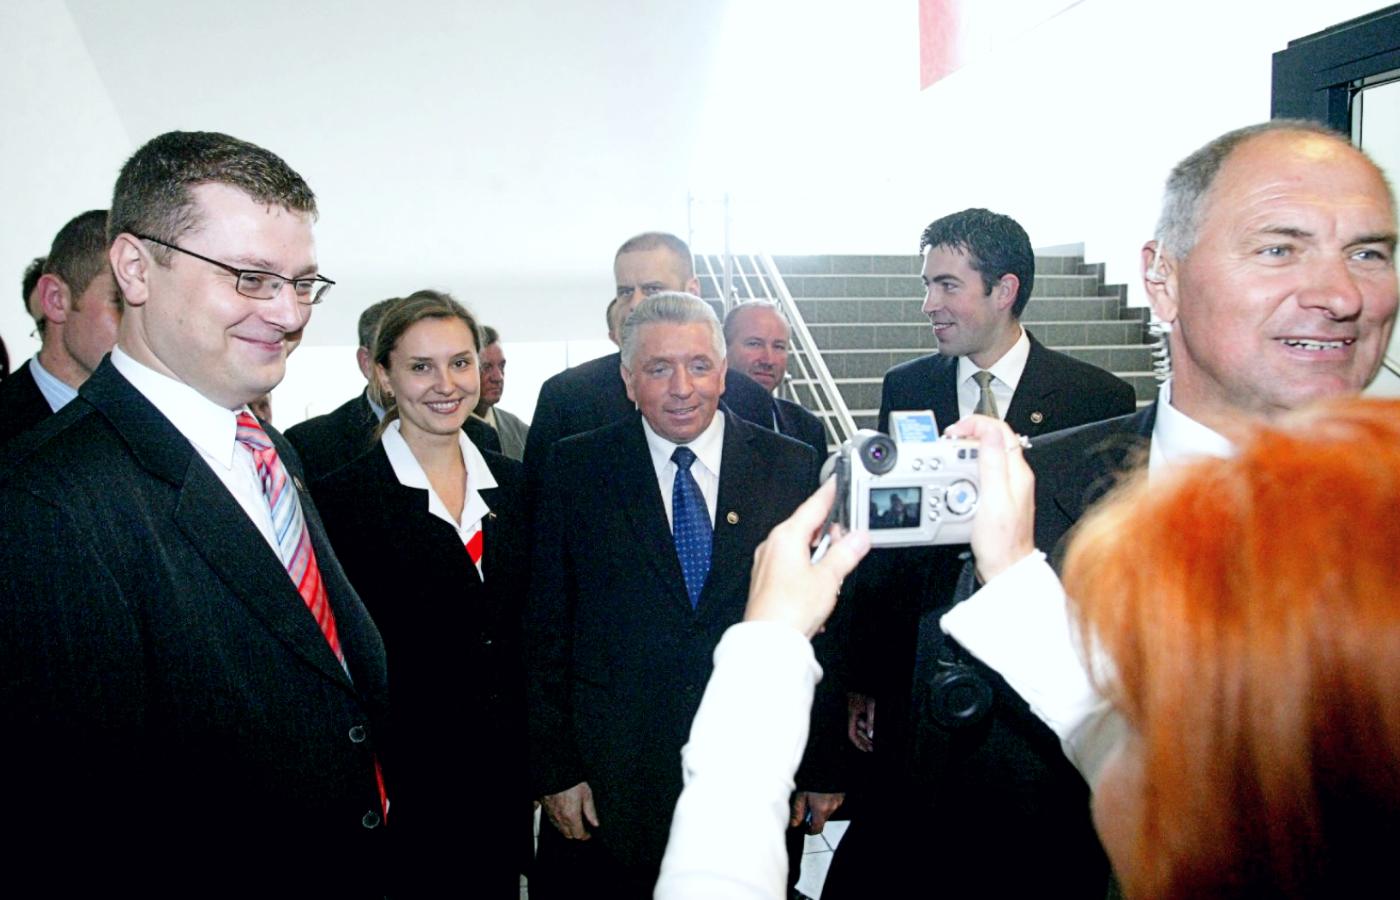 Archiwalne zdjęcie Ewy Bartosiewicz (na lewo od Andrzeja Leppera) z rady krajowej Samoobrony w 2004 r.